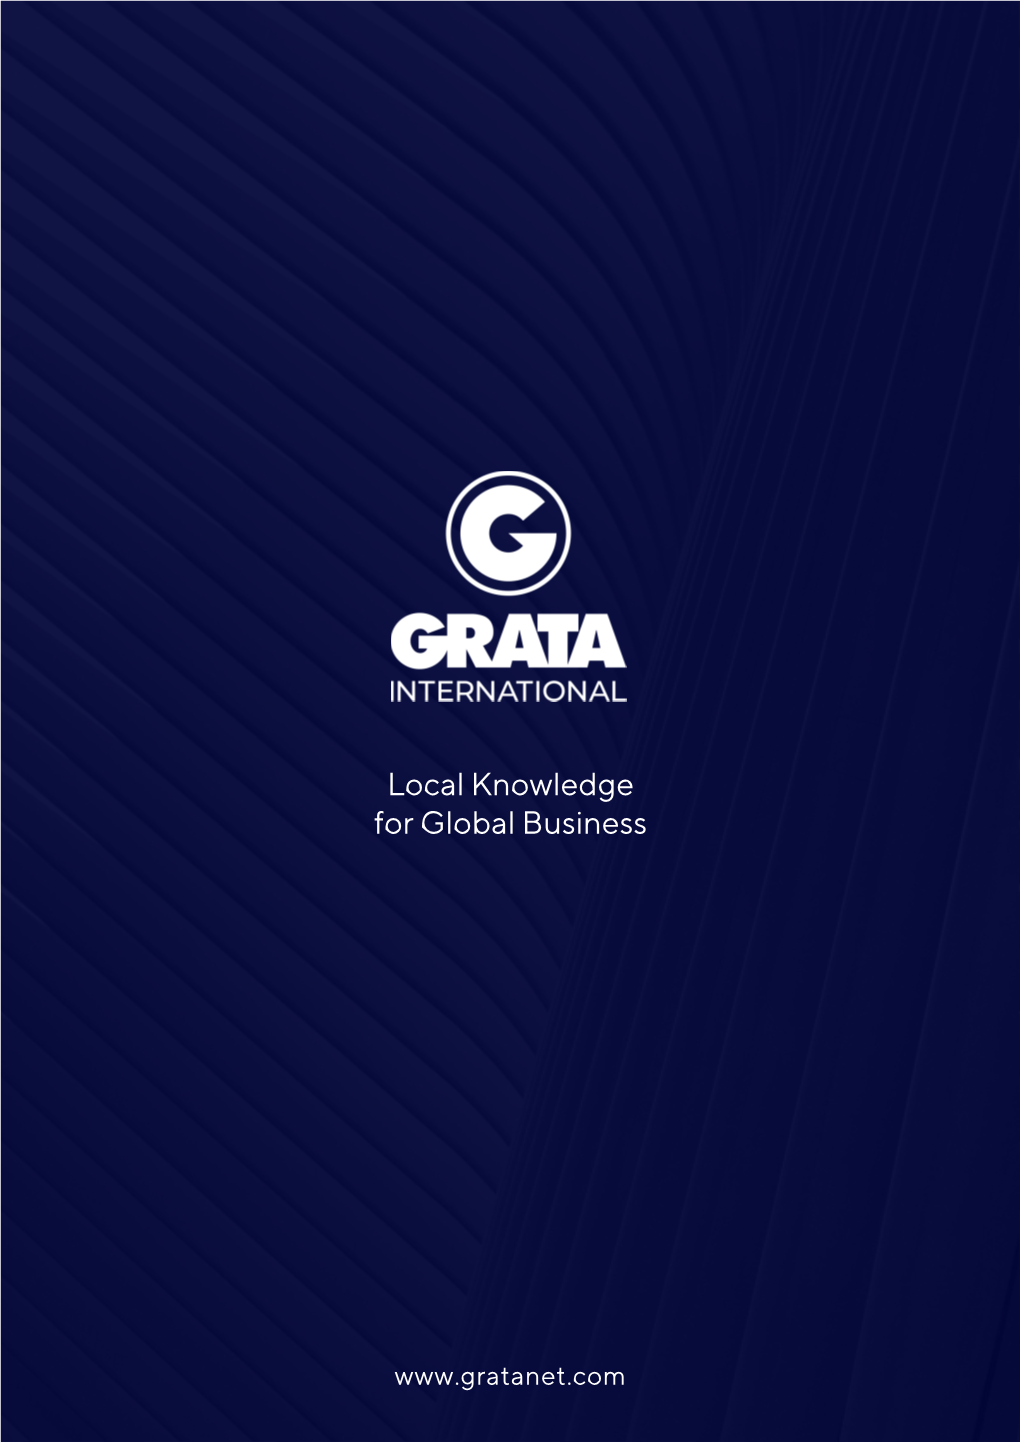 GRATA International Обладает Обширным Опытом В Реализации Комплексных Проектов В Нефтегазовой Сфере